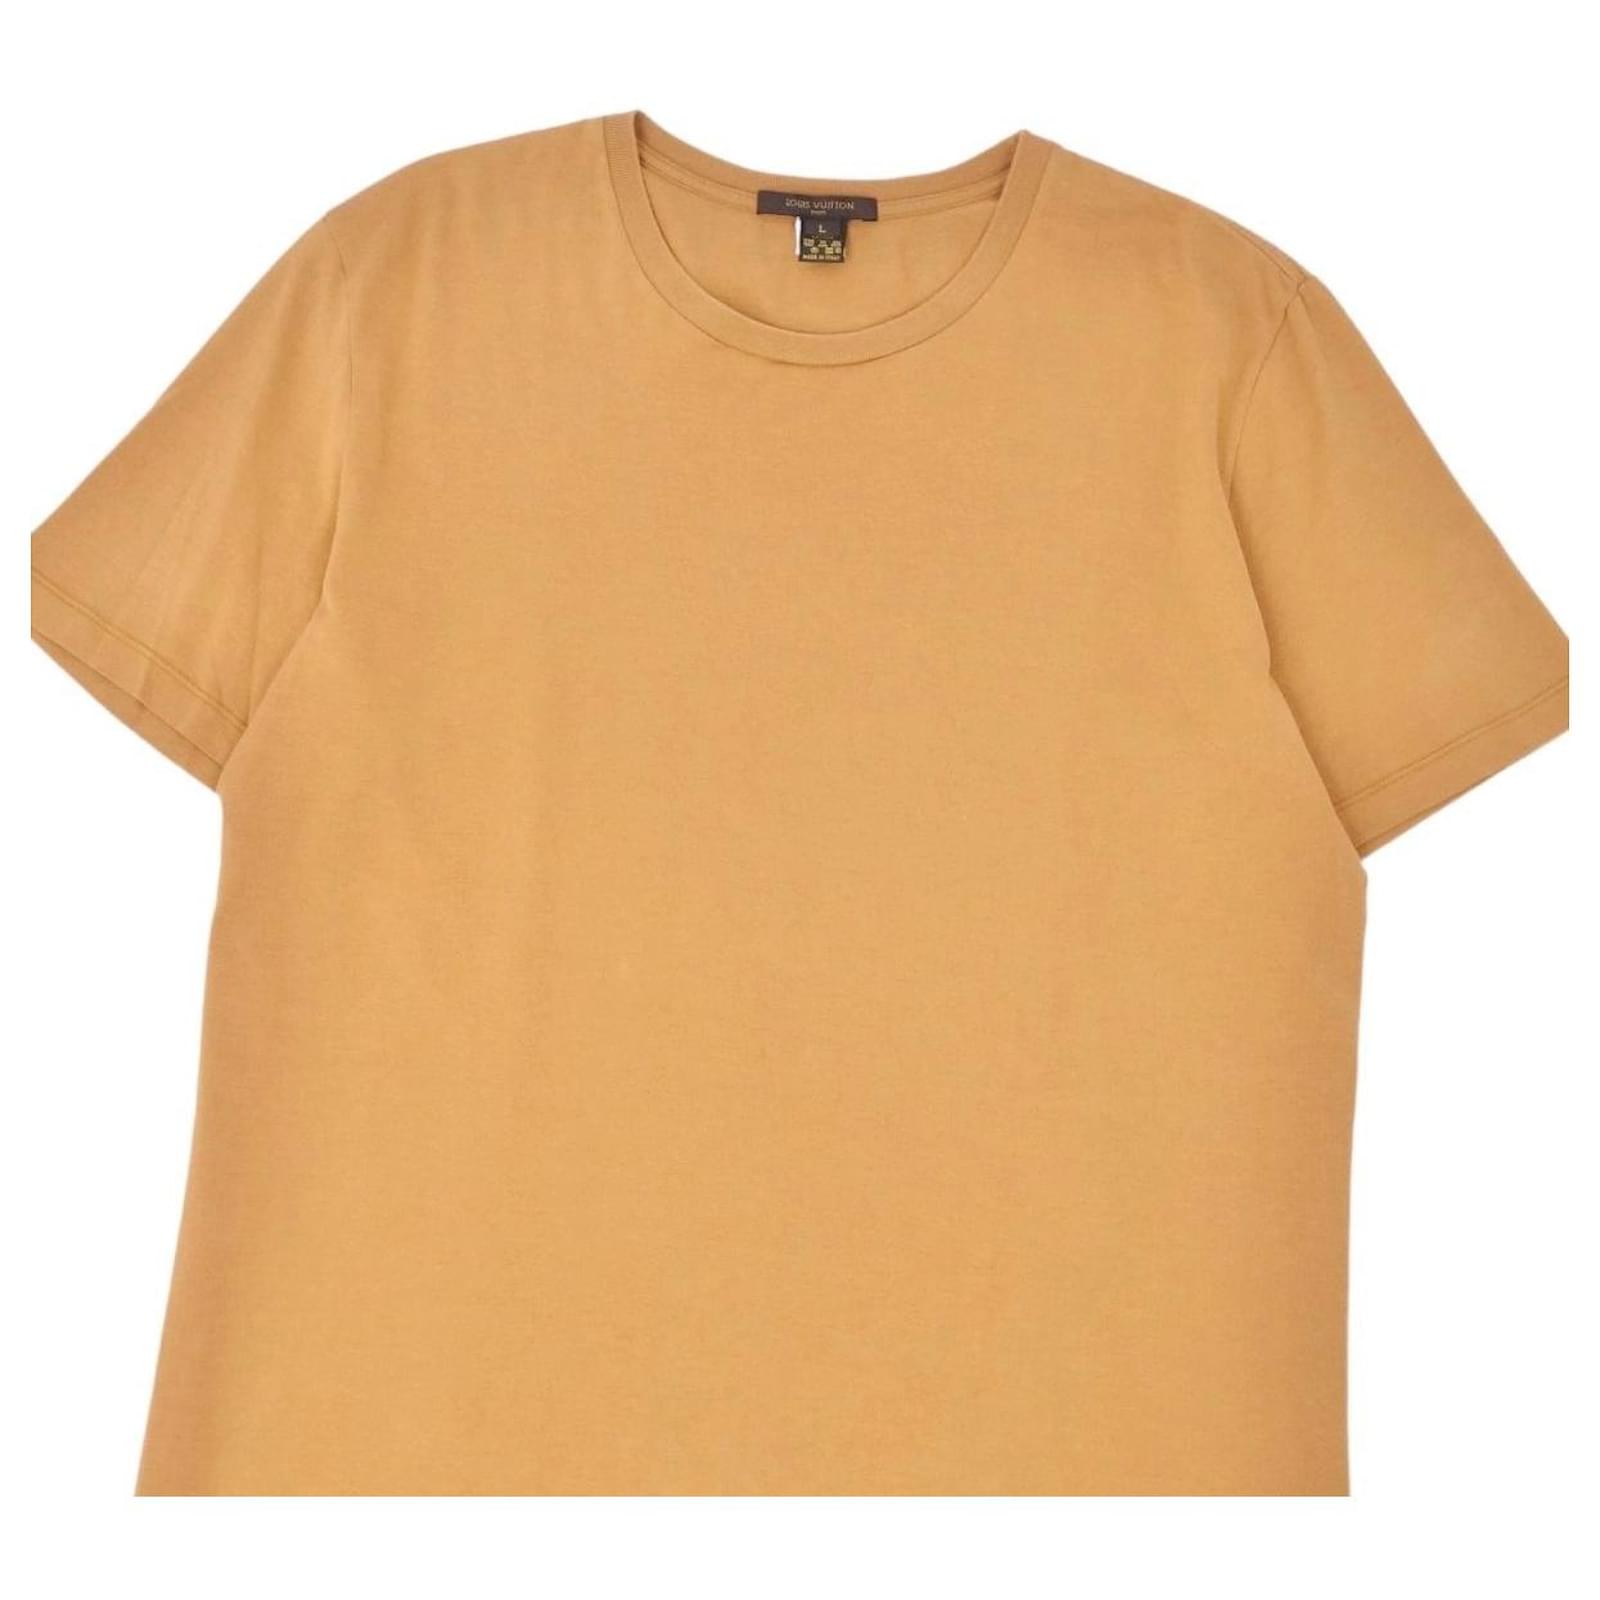 Louis Vuitton Short-sleeved Cotton T-Shirt Orange Flame. Size 3L